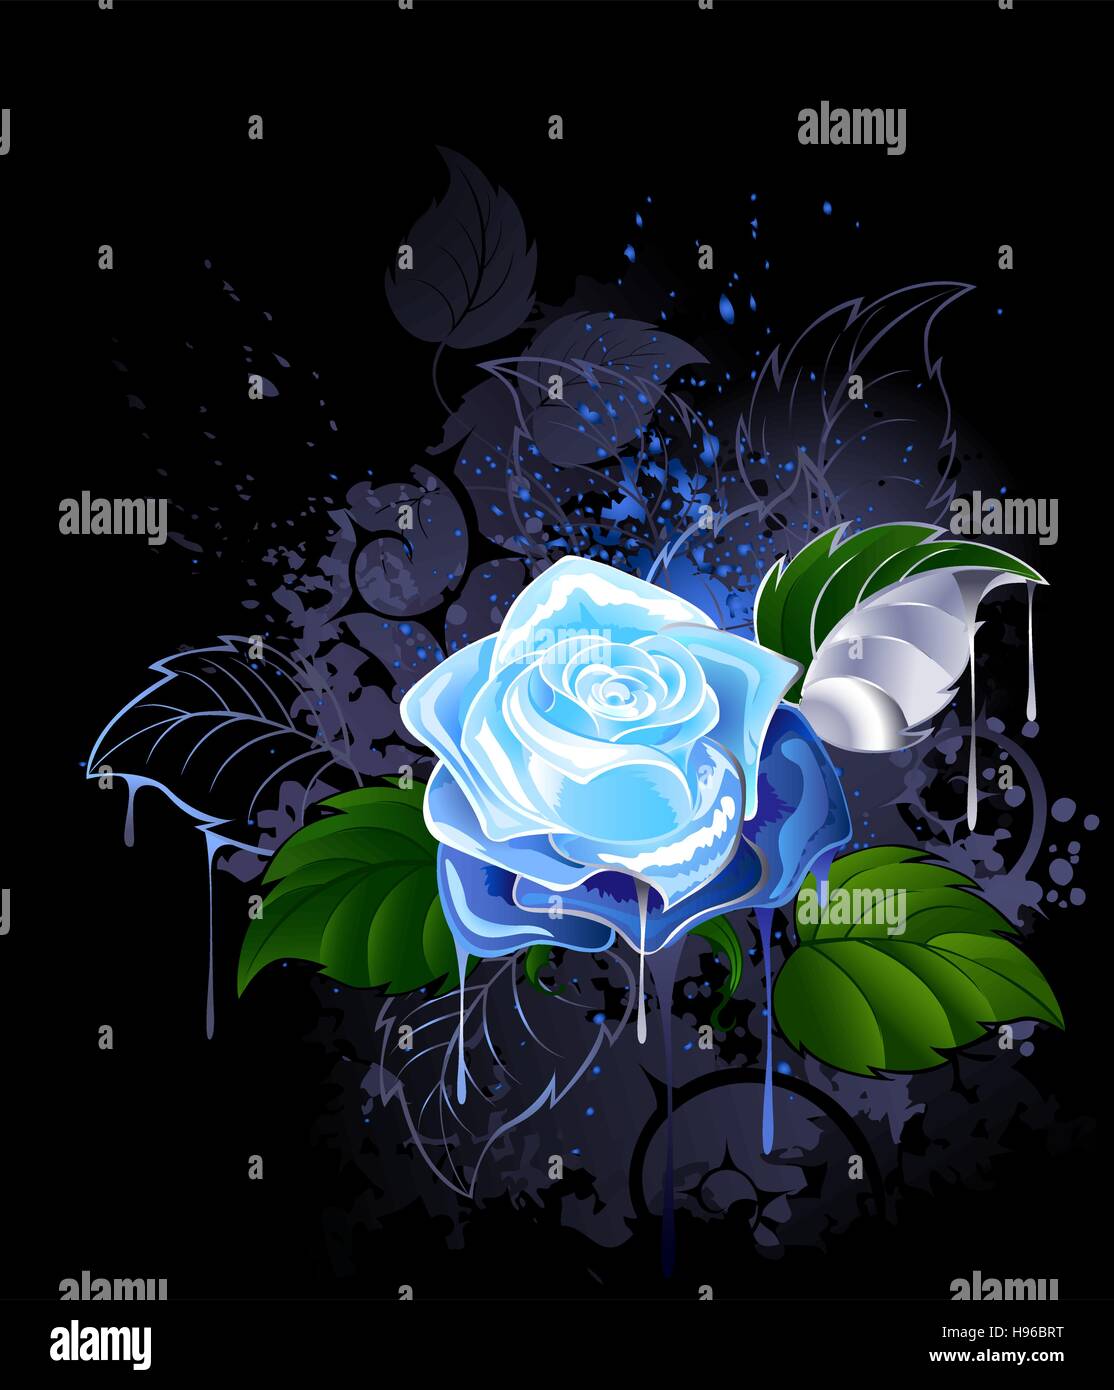 Rosa blu con foglie verdi su sfondo nero è spruzzato sulle con vernice  Immagine e Vettoriale - Alamy